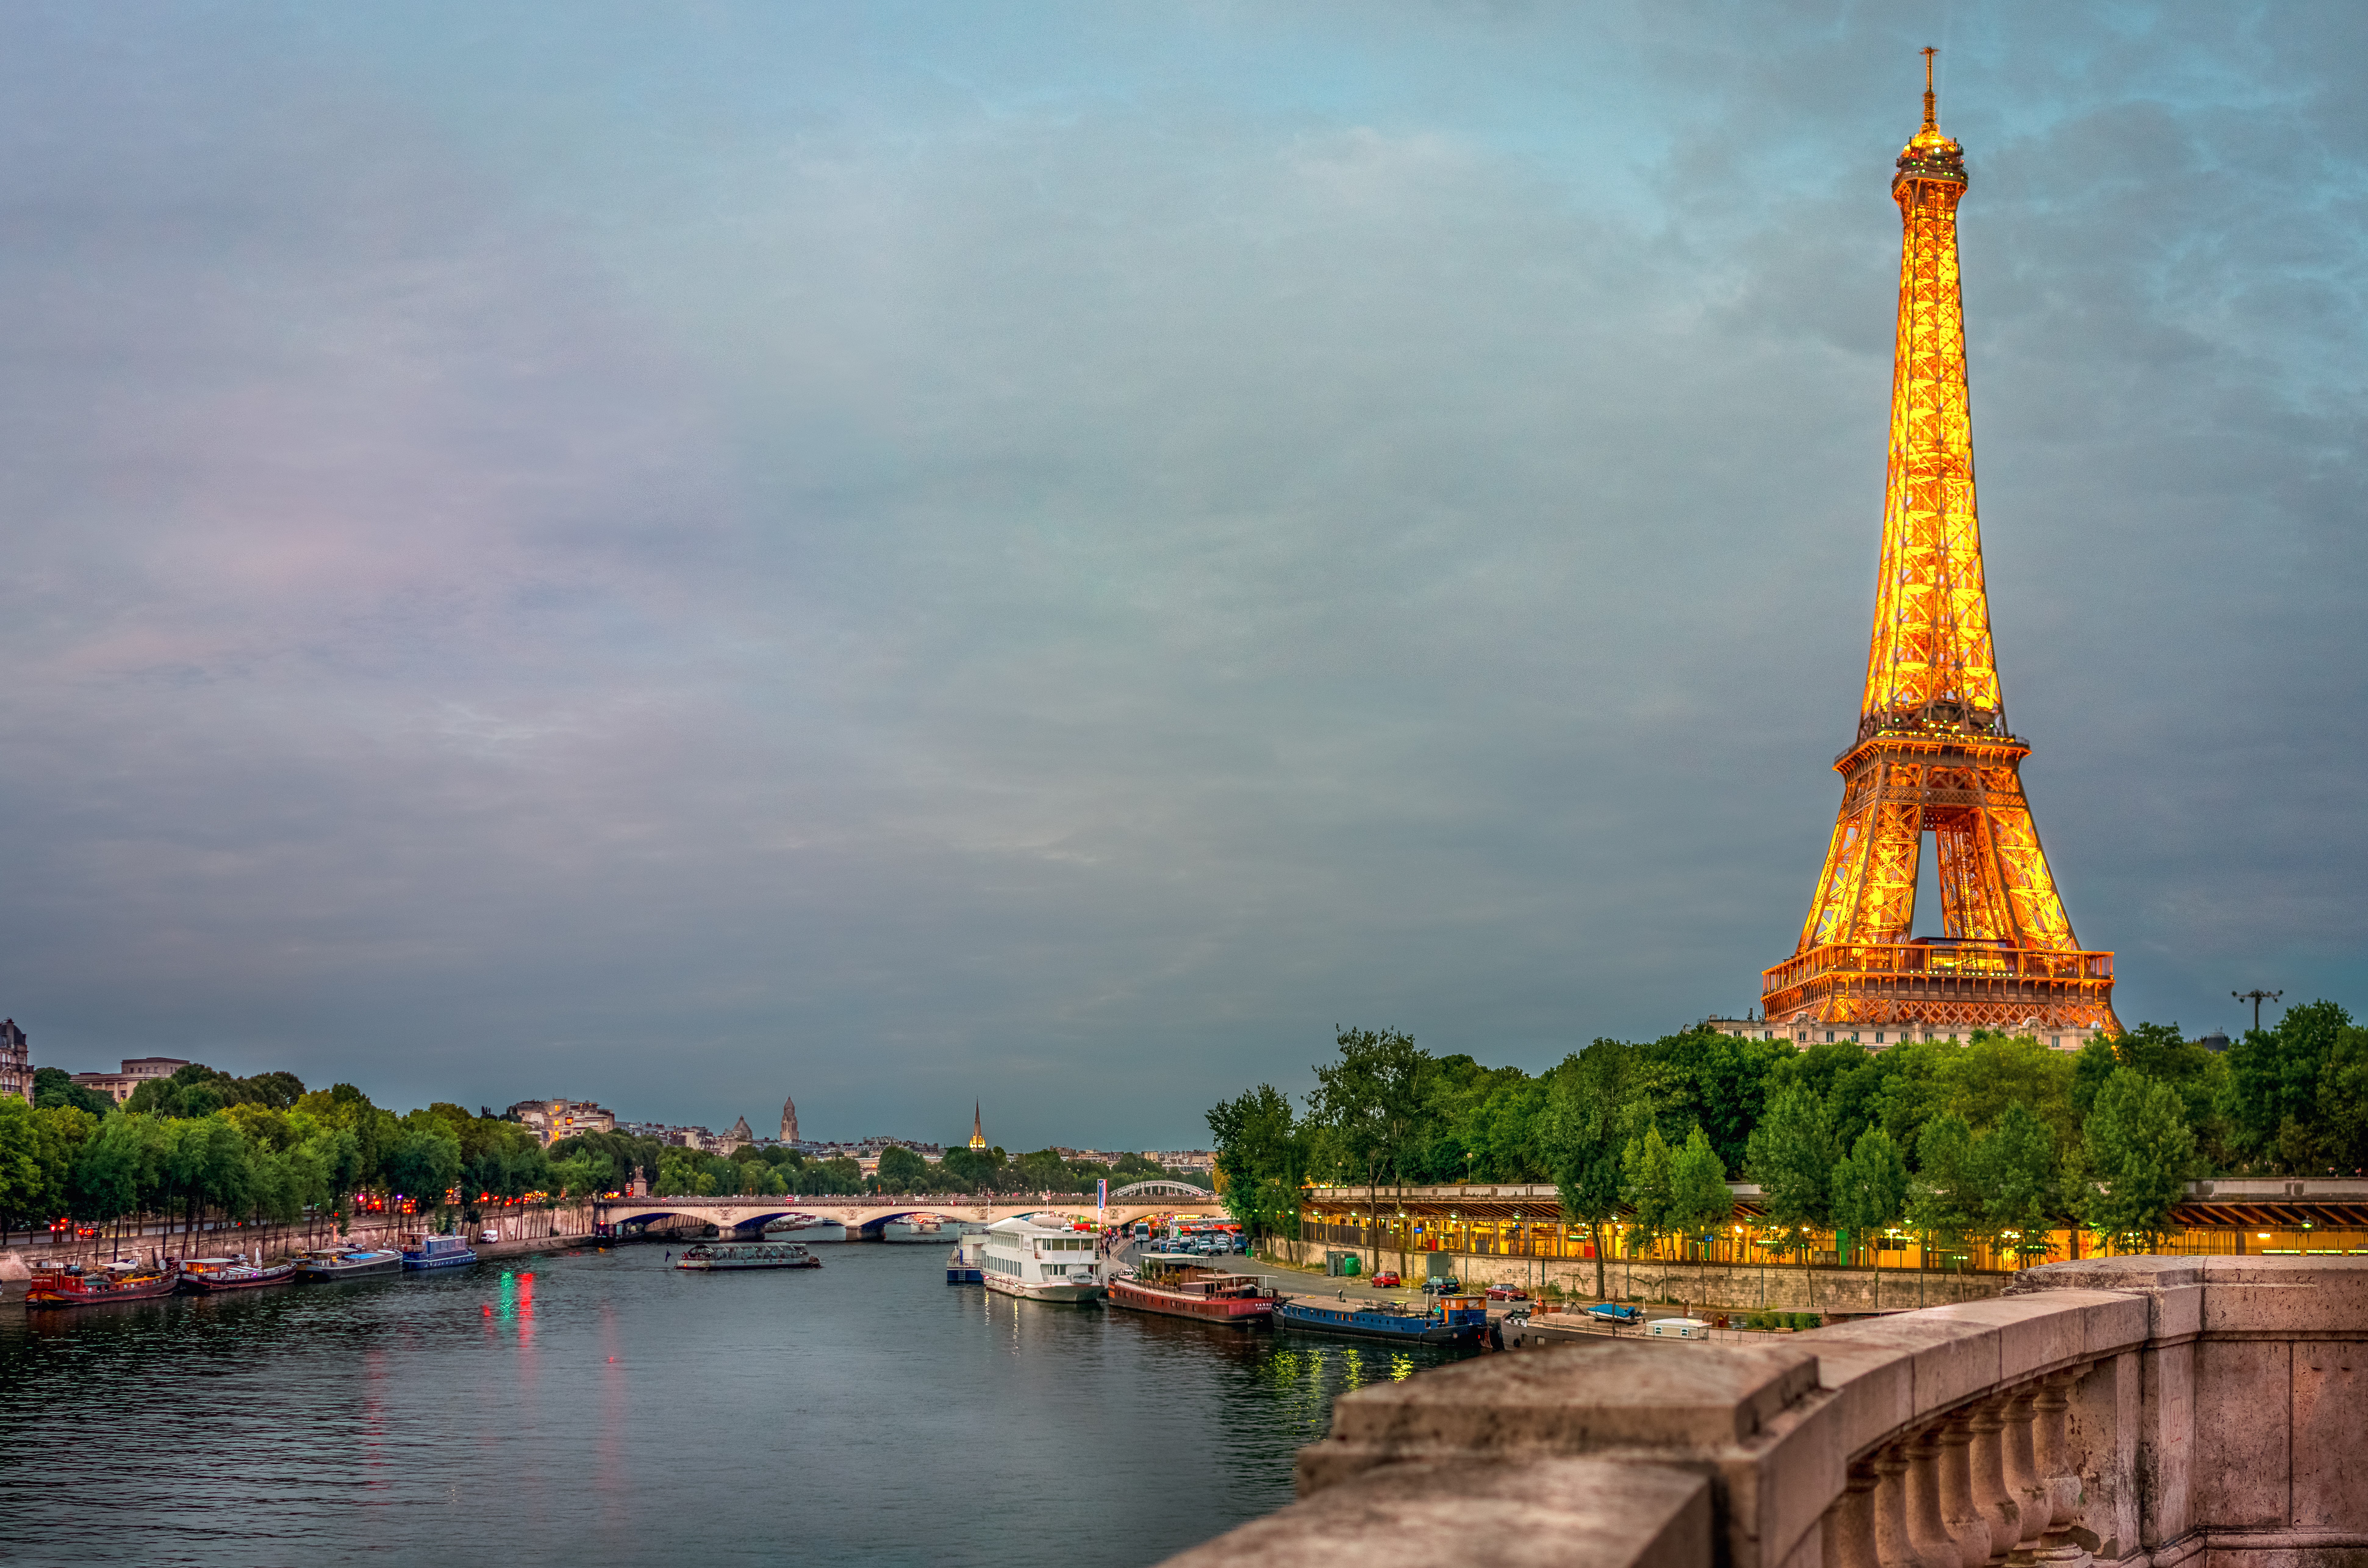 Boat Eiffel Tower France Monument Paris Seine 7765x5143